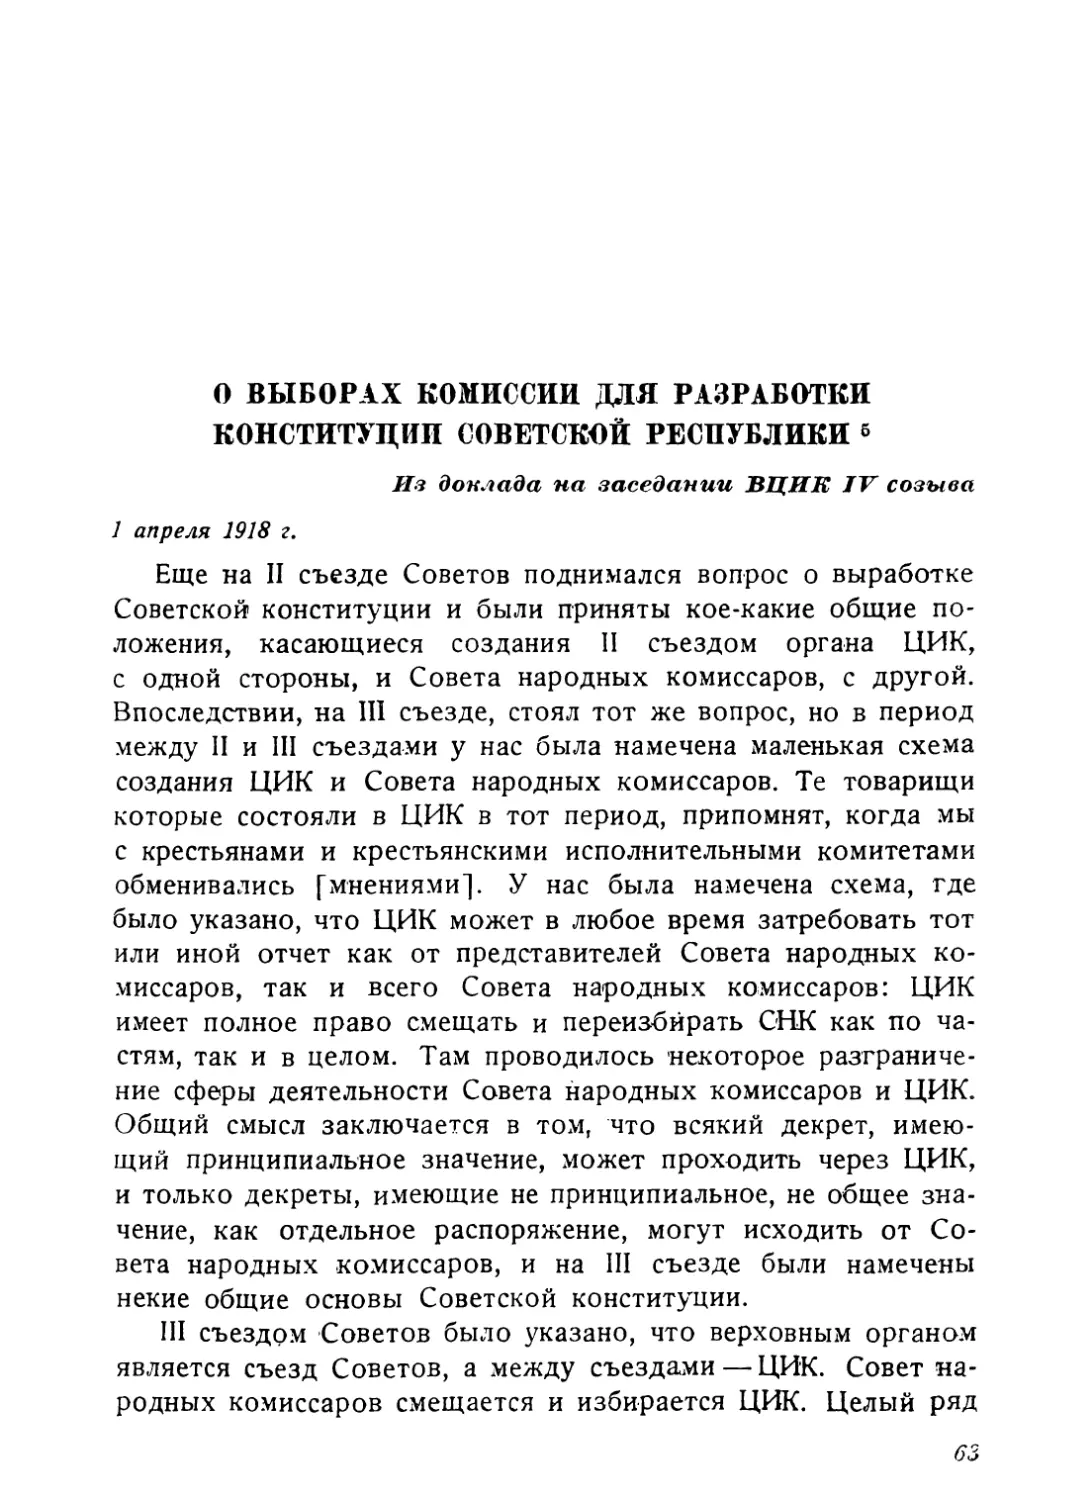 О выборах комиссии для разработки Конституции Советской республики, 1 апреля 1918 г